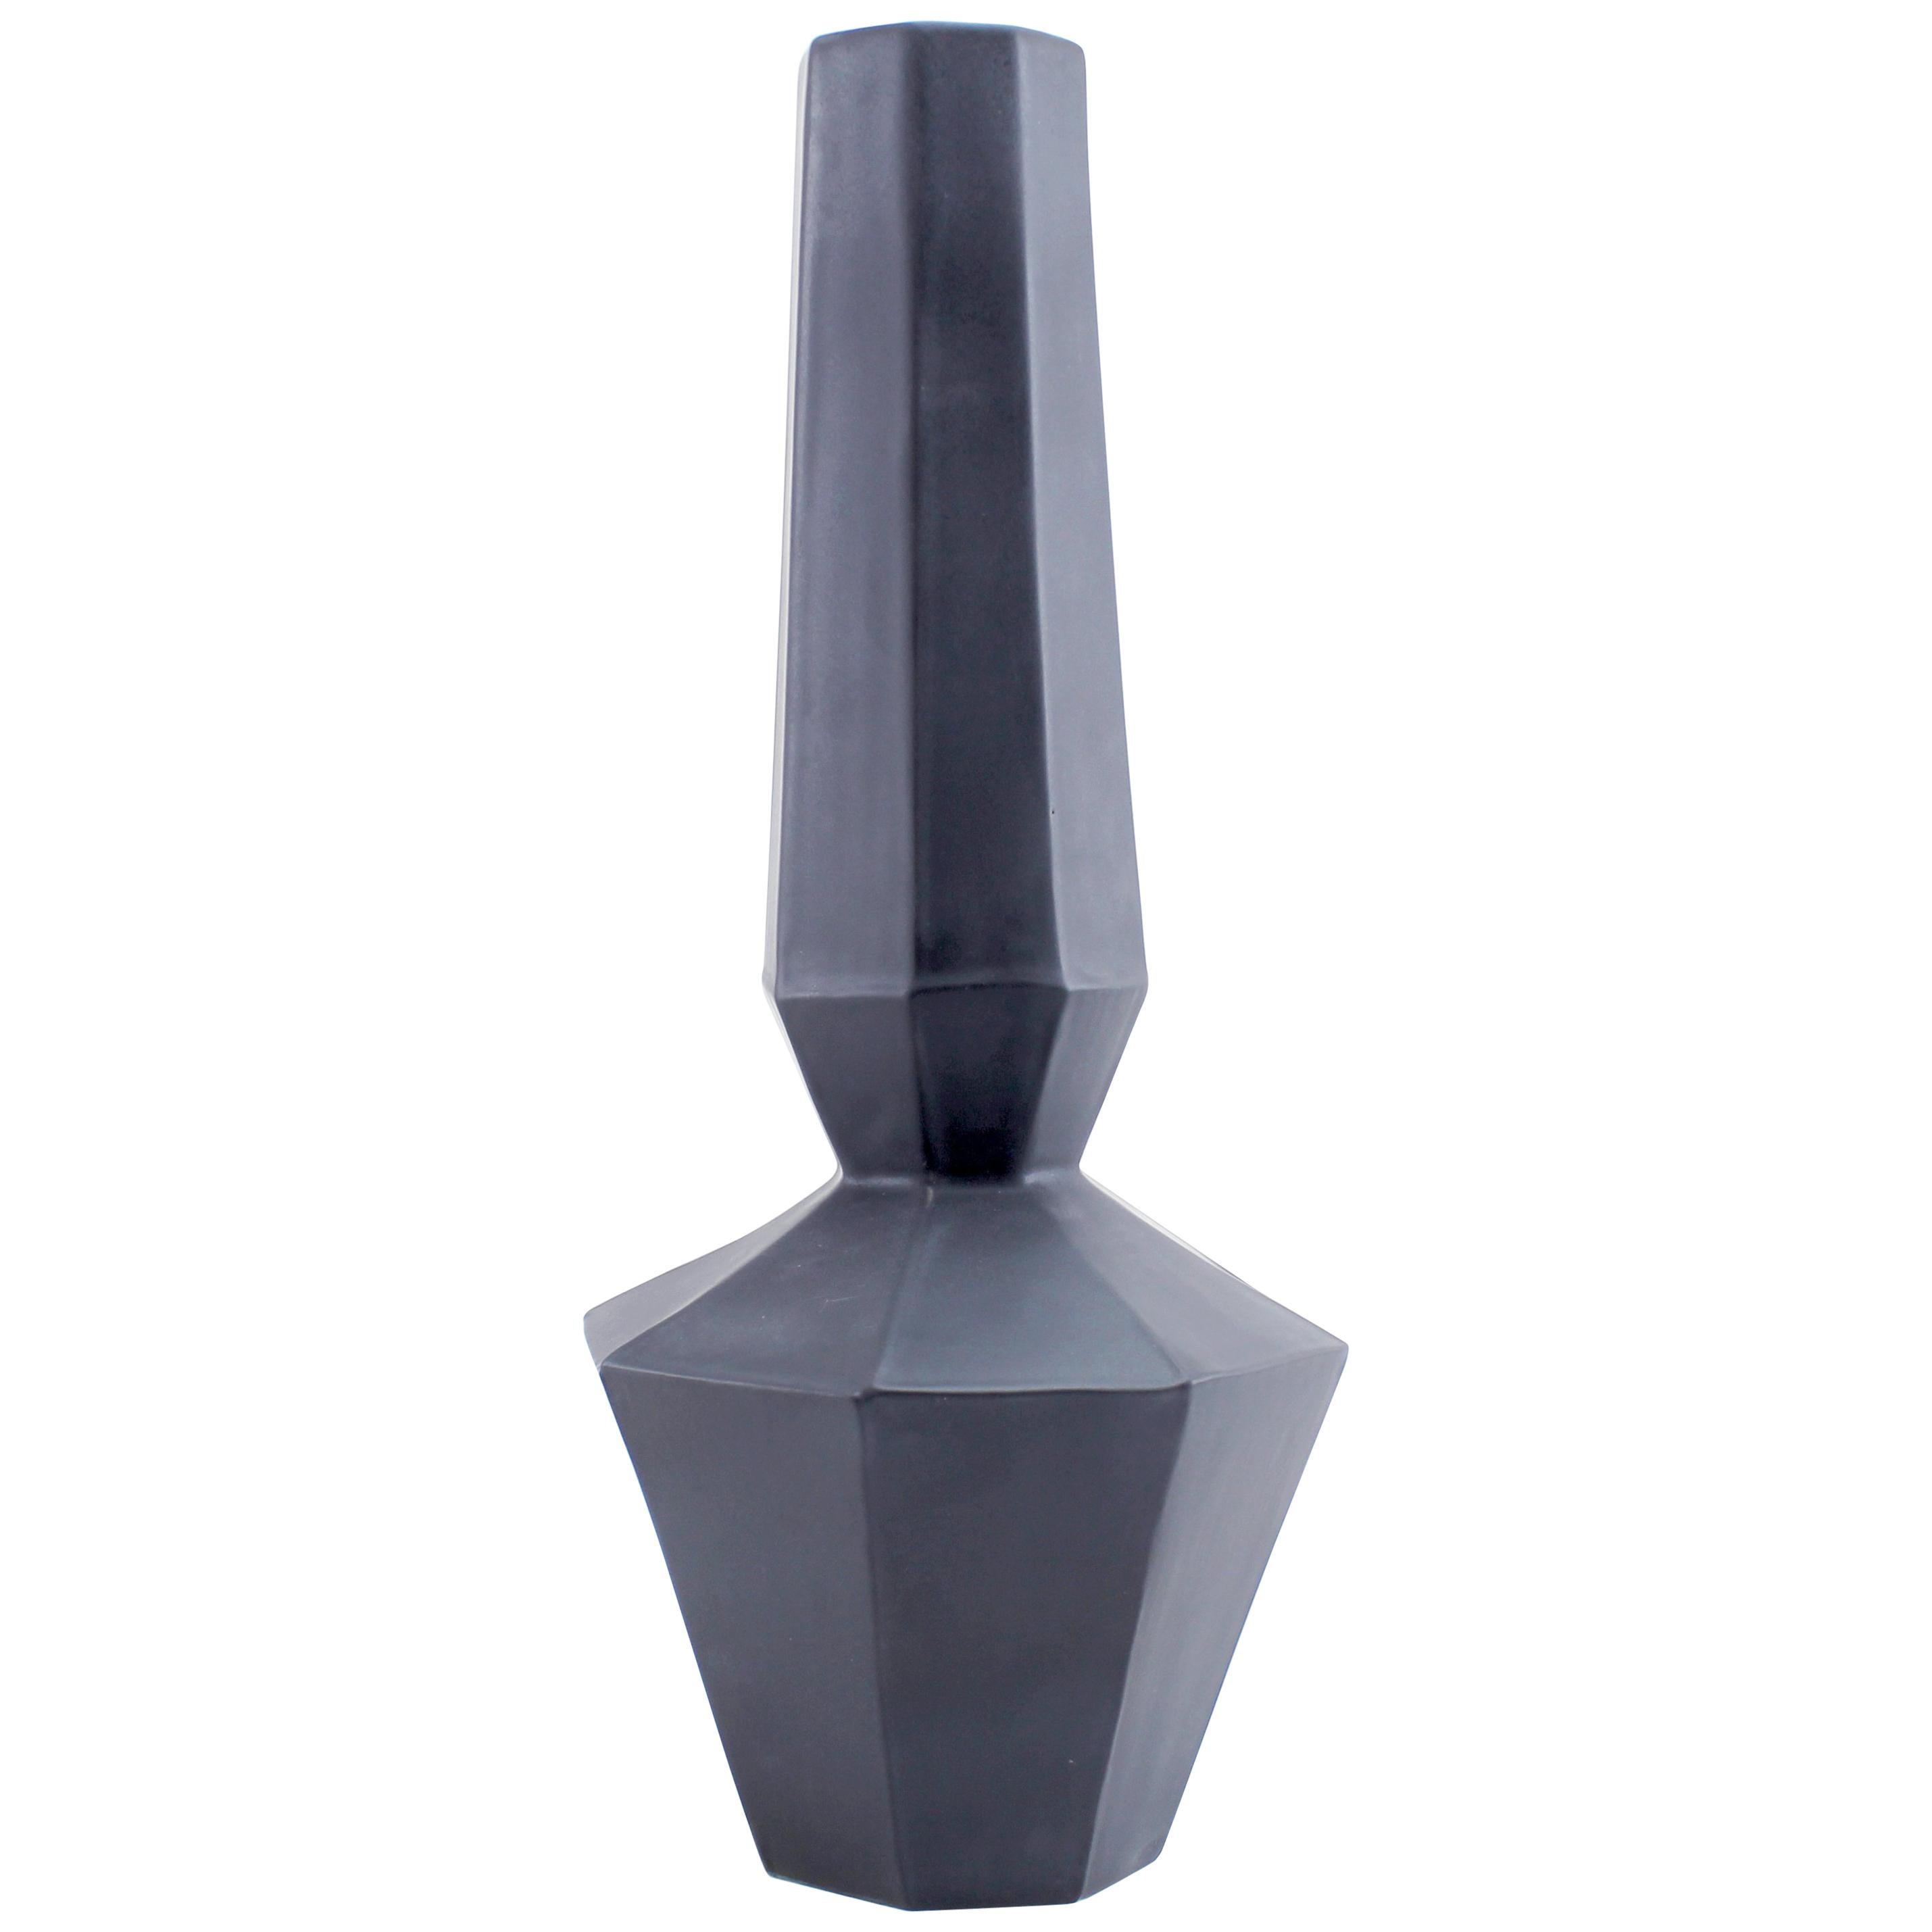 Geometric Statement Vase Charcoal Matte Black Faceted Porcelain Modern Minimal For Sale